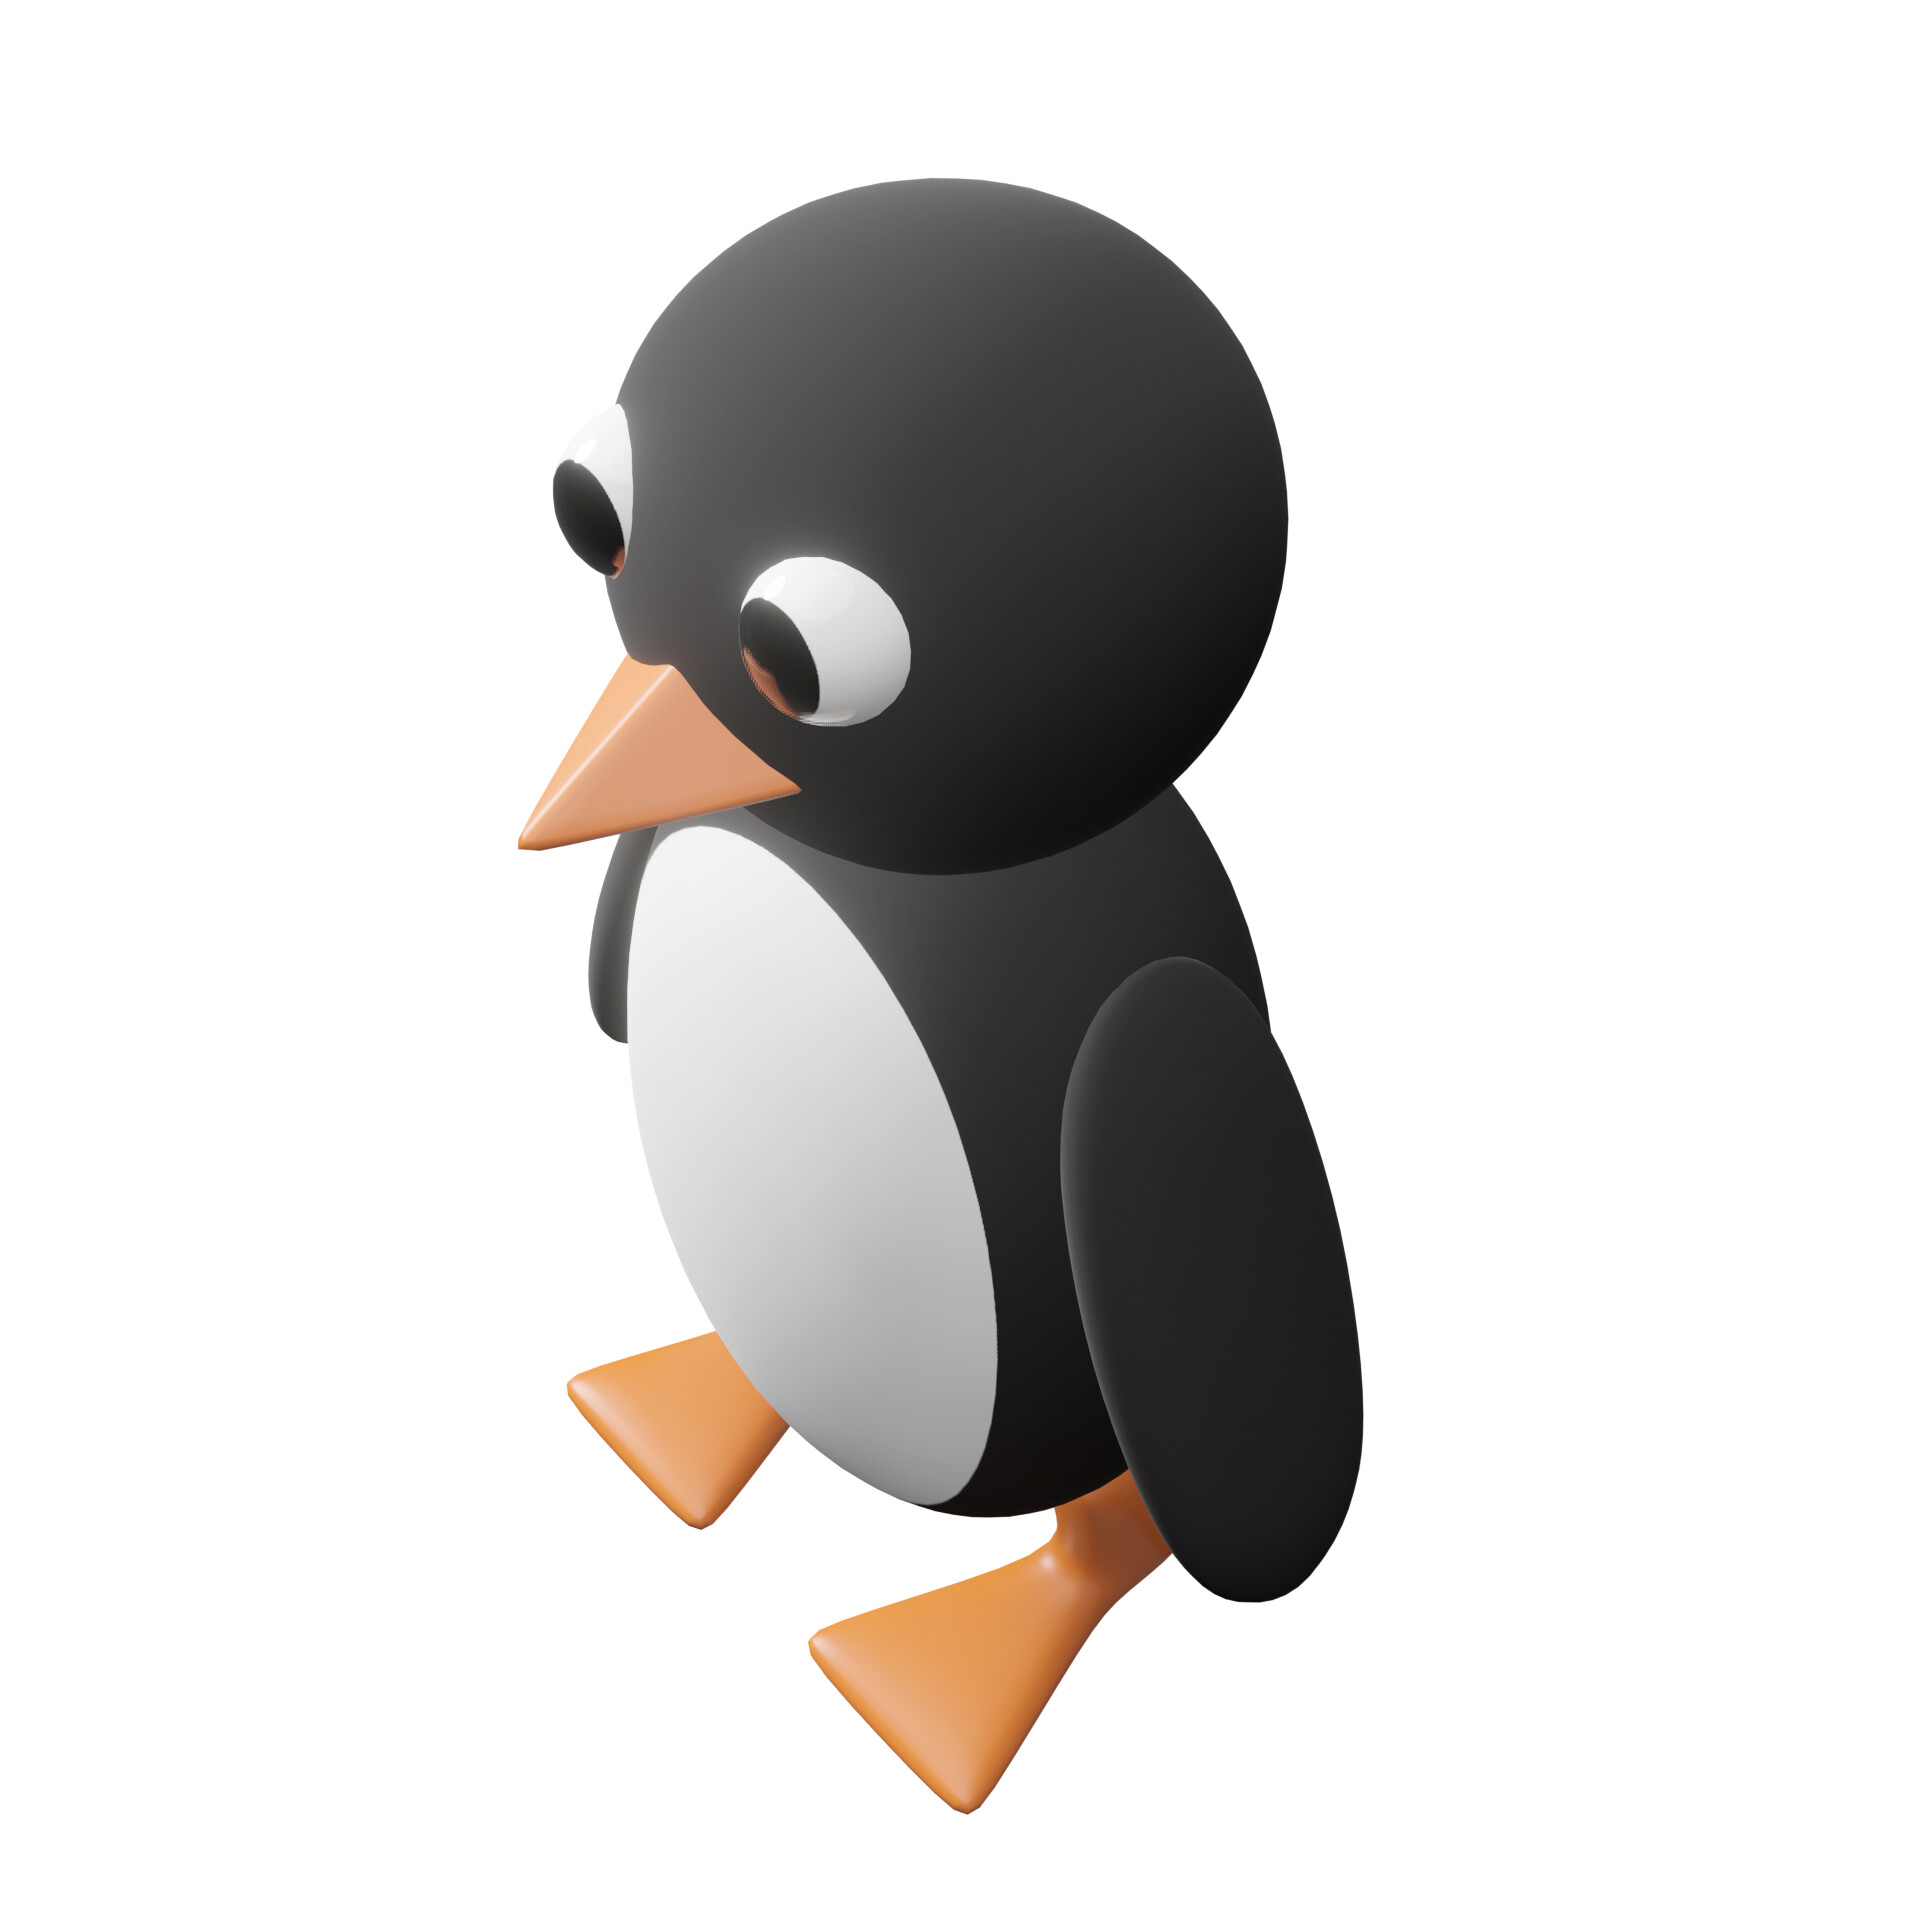 Tinkercad Penguin Tutorial on Vimeo